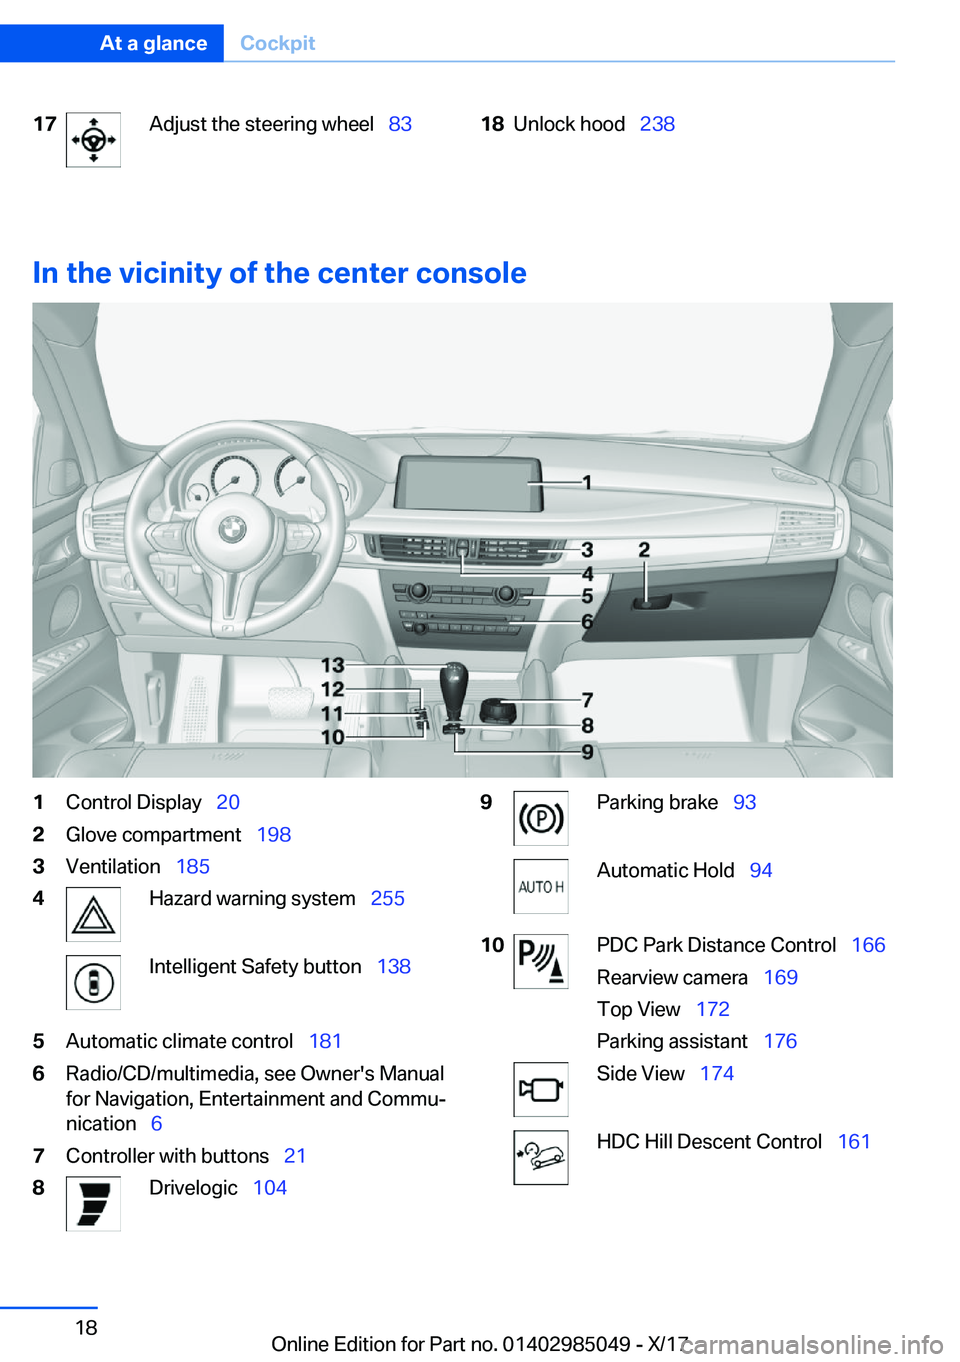 BMW X5M 2018 User Guide �1�7�A�d�j�u�s�t� �t�h�e� �s�t�e�e�r�i�n�g� �w�h�e�e�l\_�8�3�1�8�U�n�l�o�c�k� �h�o�o�d\_�2�3�8
�I�n��t�h�e��v�i�c�i�n�i�t�y��o�f��t�h�e��c�e�n�t�e�r��c�o�n�s�o�l�e
�1�C�o�n�t�r�o�l� �D�i�s�p